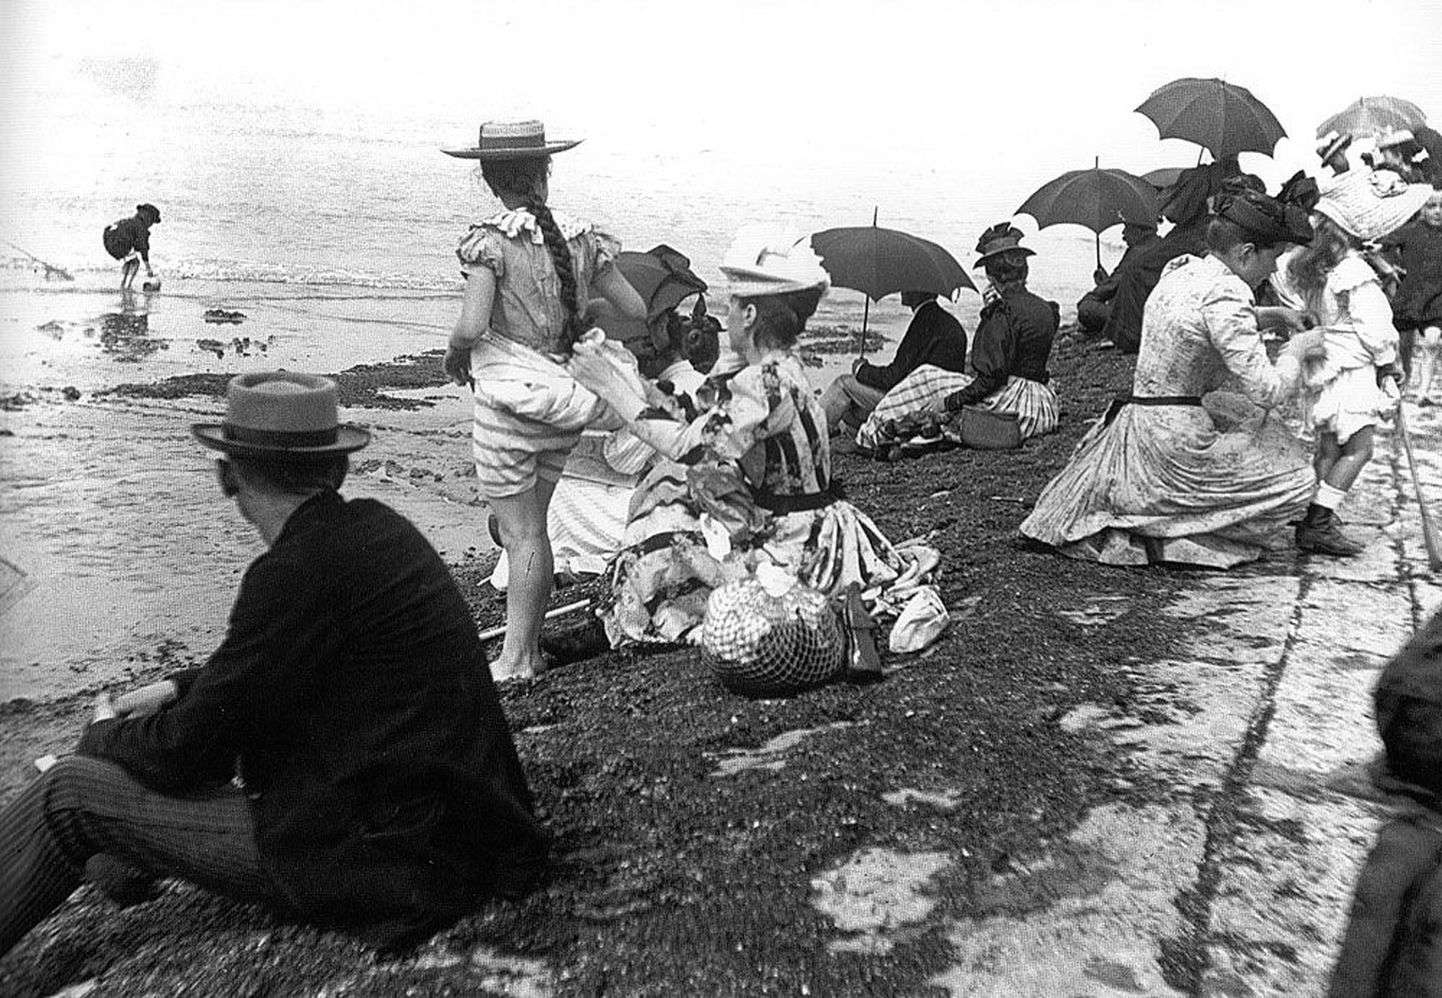 Fotojäädvustus ilusast ajastust: kübaratega belglased Ostendis päikesevanne võtmas. Aasta oli 1895.